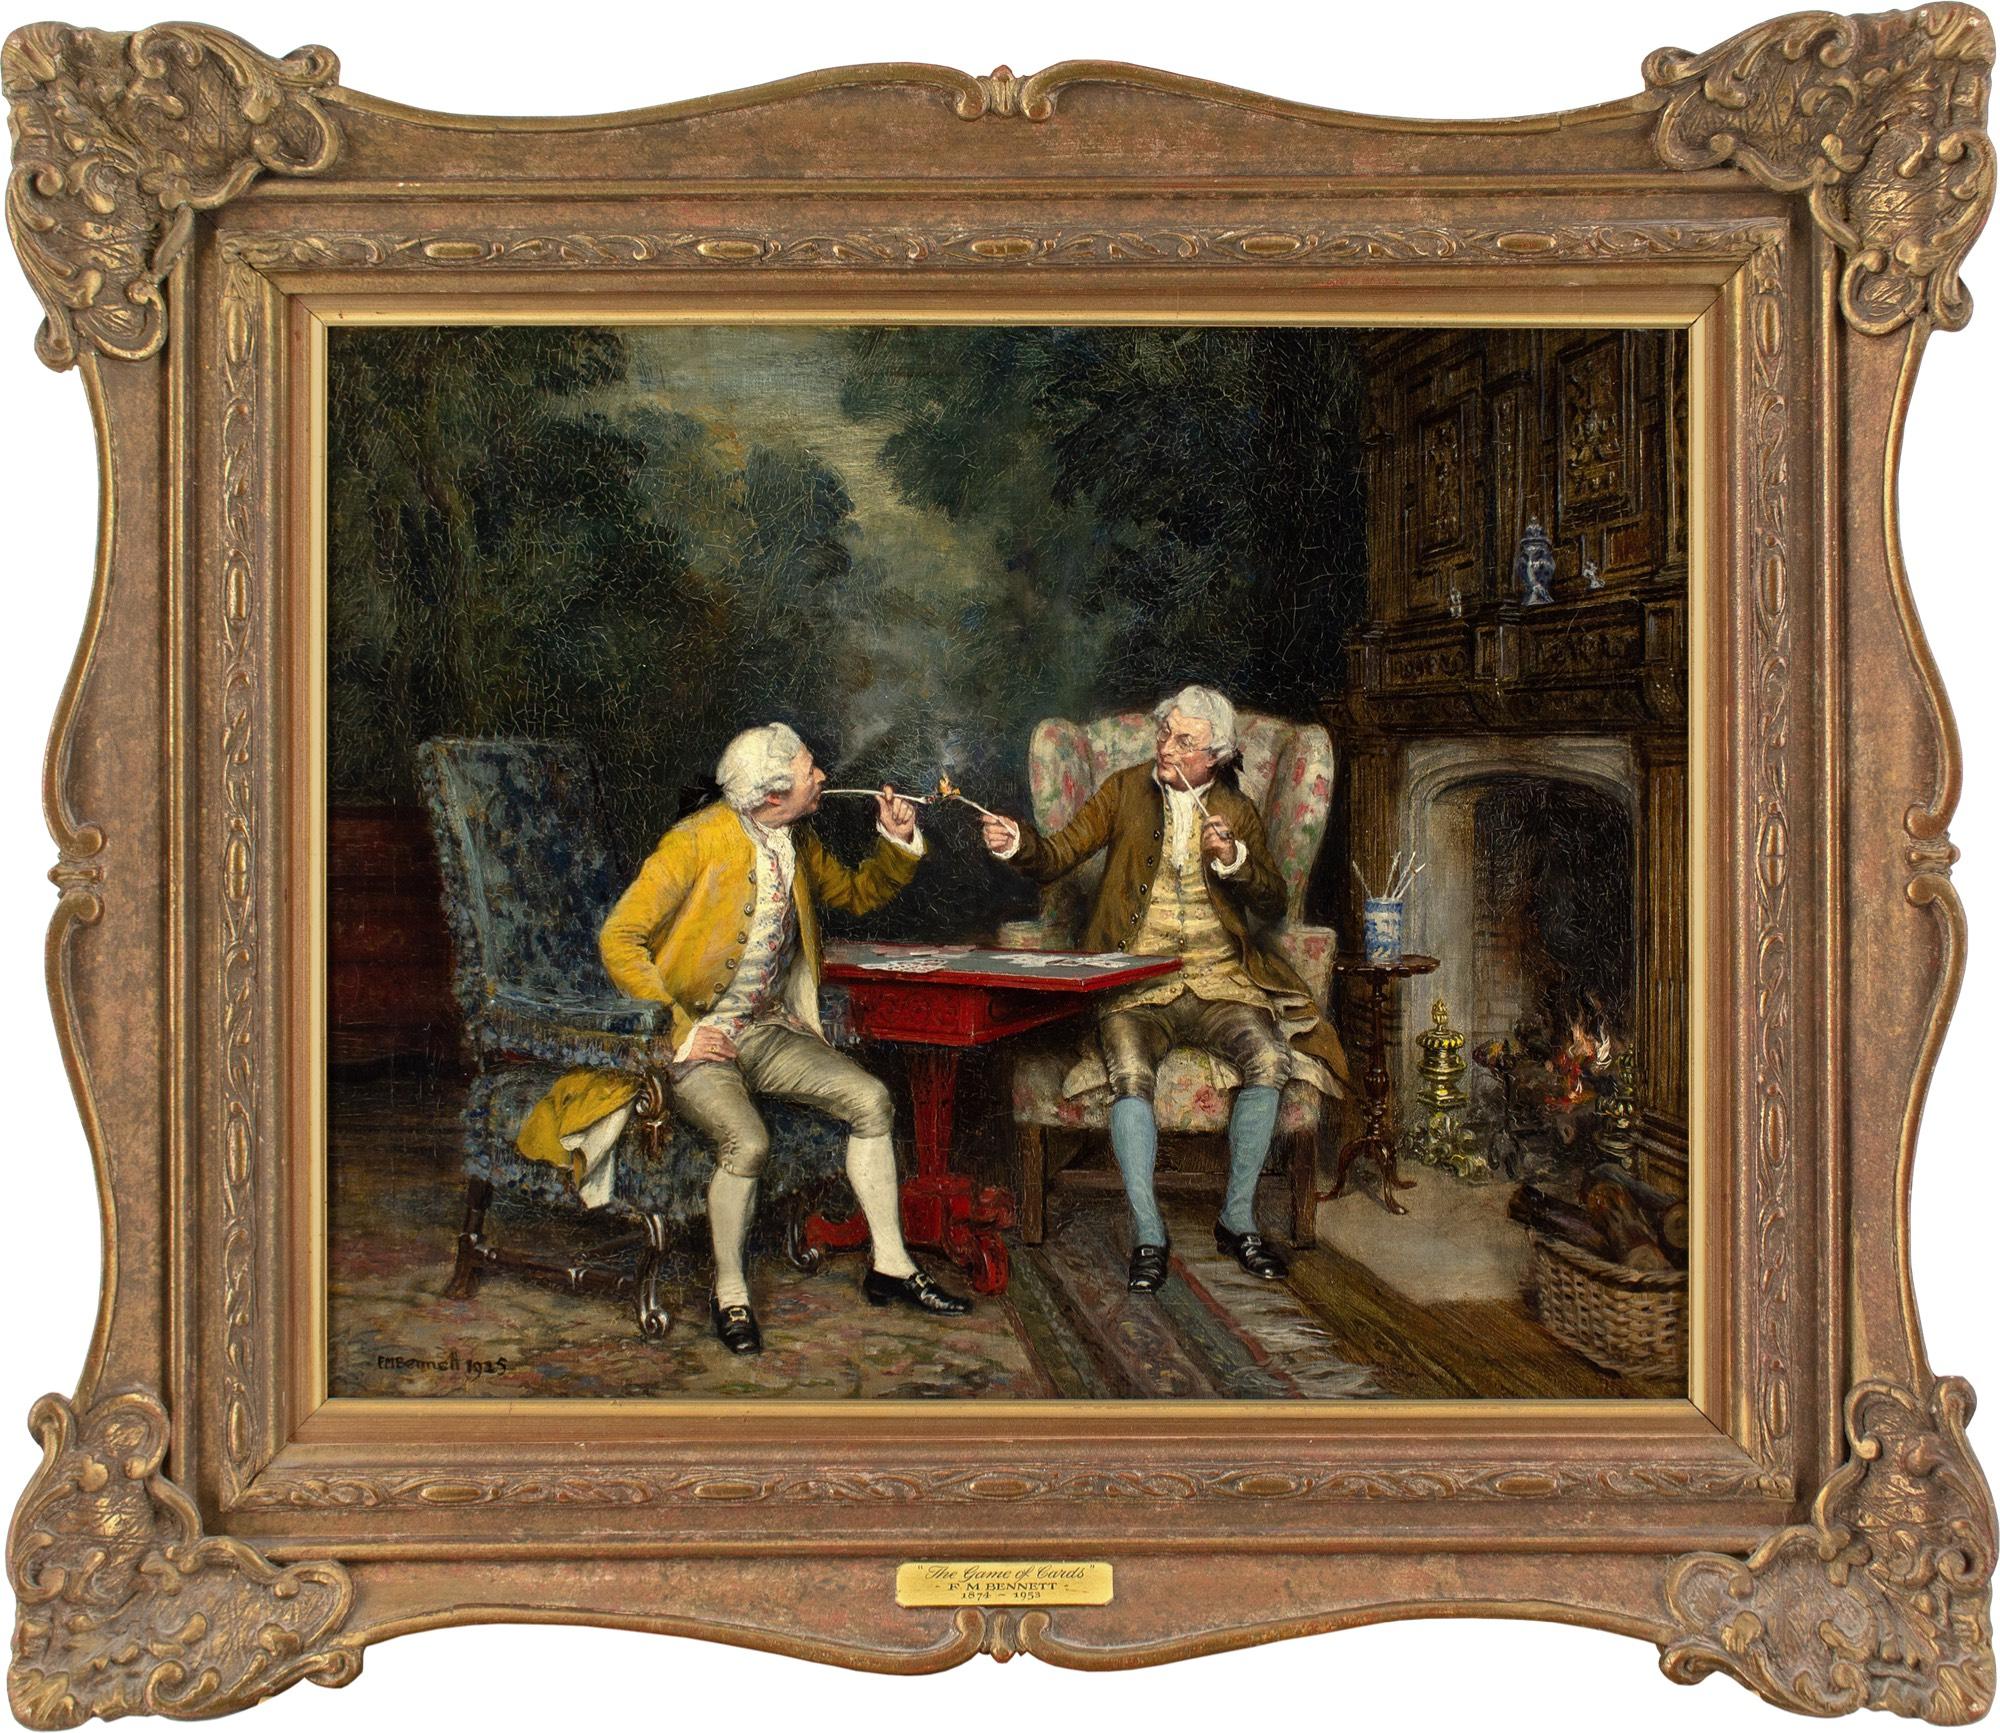 Cette belle peinture à l'huile du début du XXe siècle de l'artiste britannique Frank Moss Bennett (1874-1952) représente deux gentilshommes du XVIIIe siècle en perruque jouant aux cartes près d'un feu.

Frank Moss Bennett était un peintre distingué